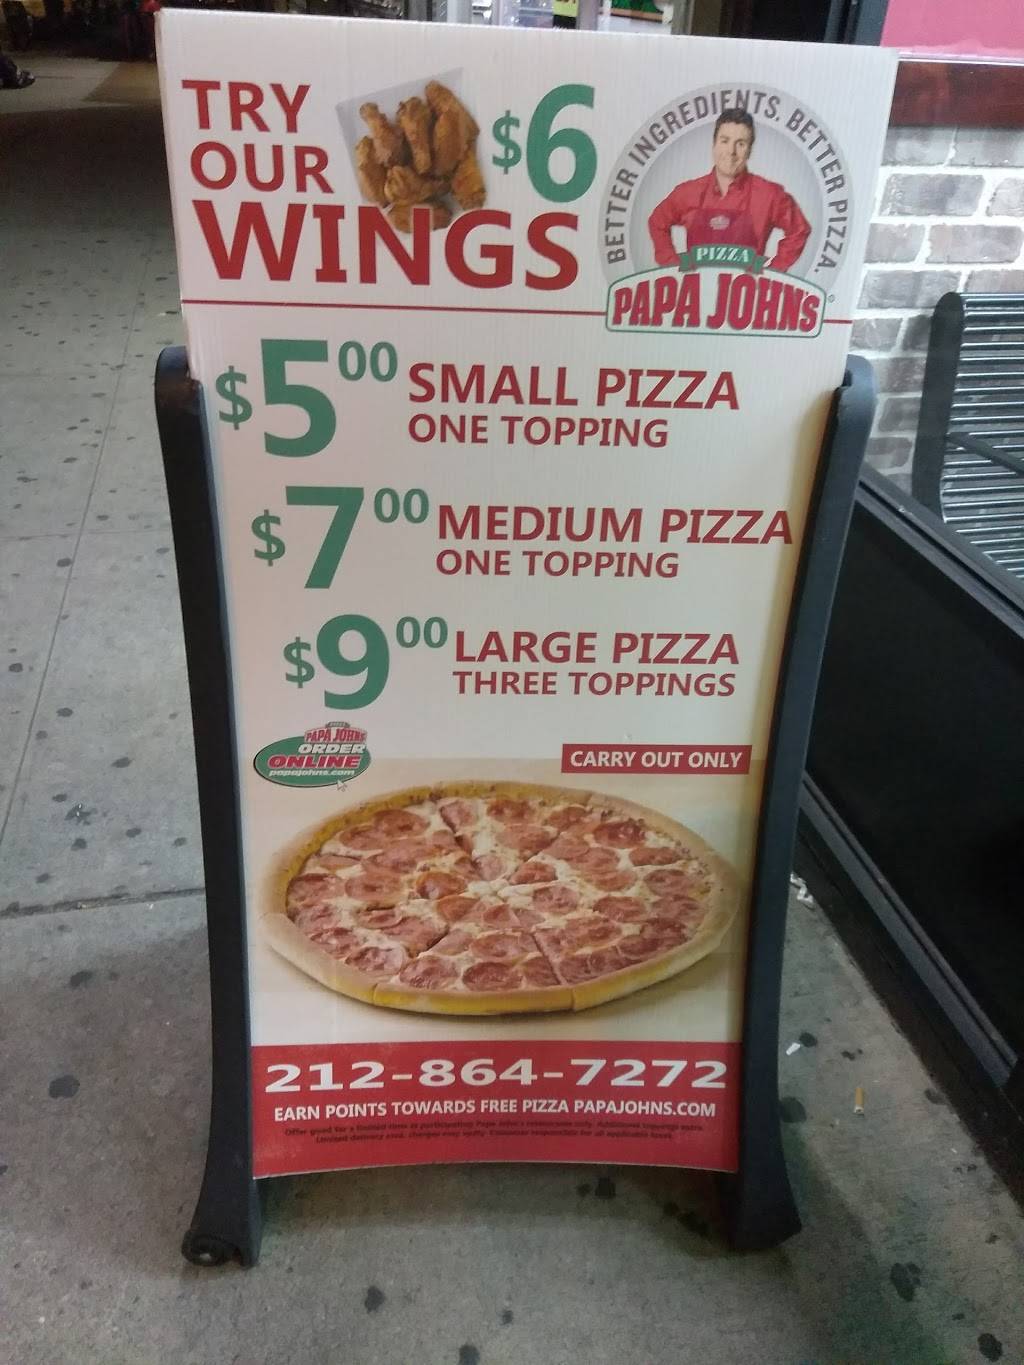 Papa Johns Pizza | restaurant | 896 Amsterdam Ave, New York, NY 10025, USA | 2128647272 OR +1 212-864-7272